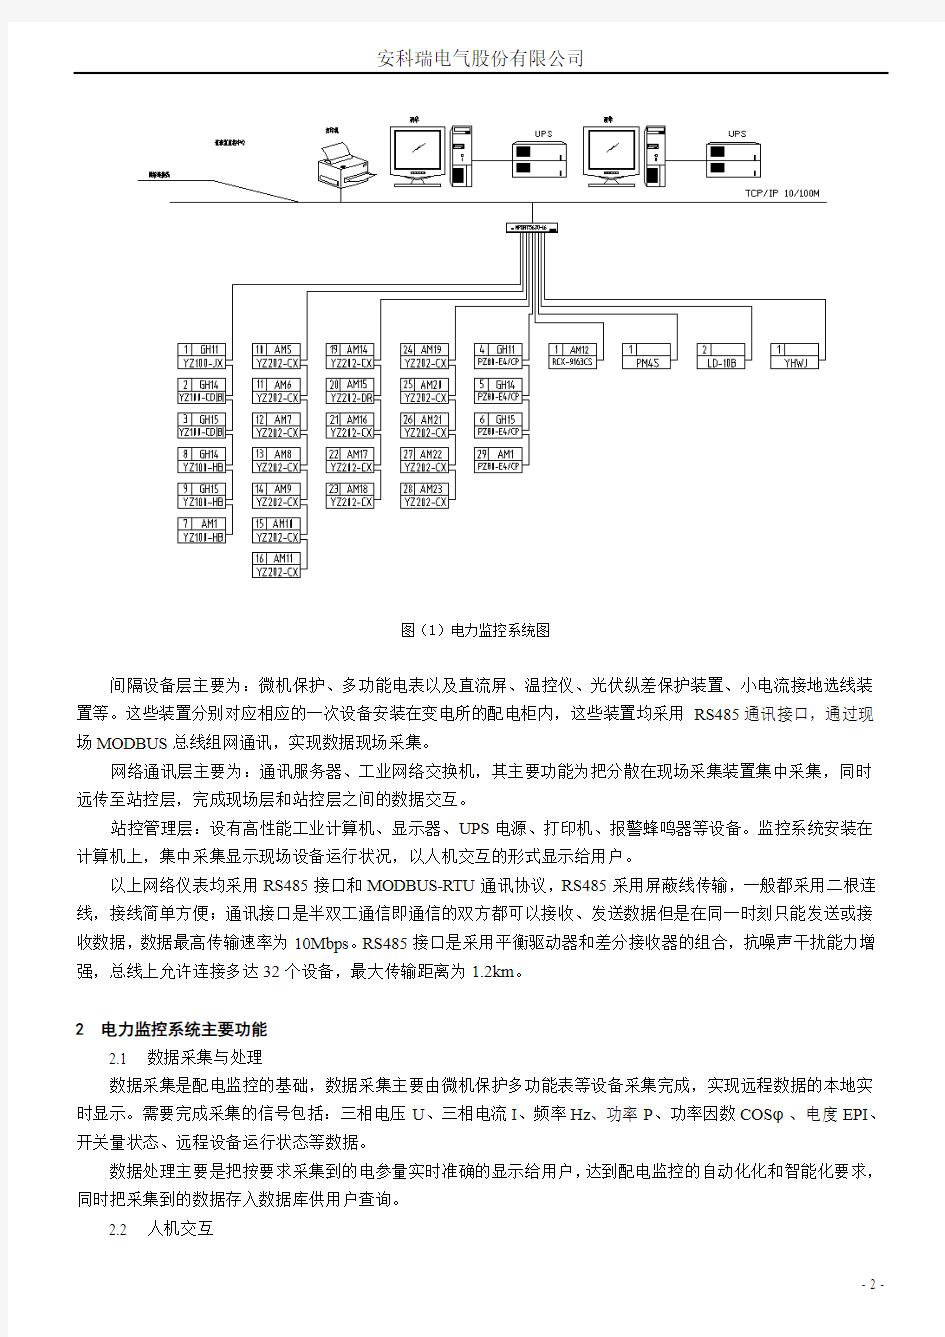 安科瑞电力监控系统在日立建基项目的应用-刘静